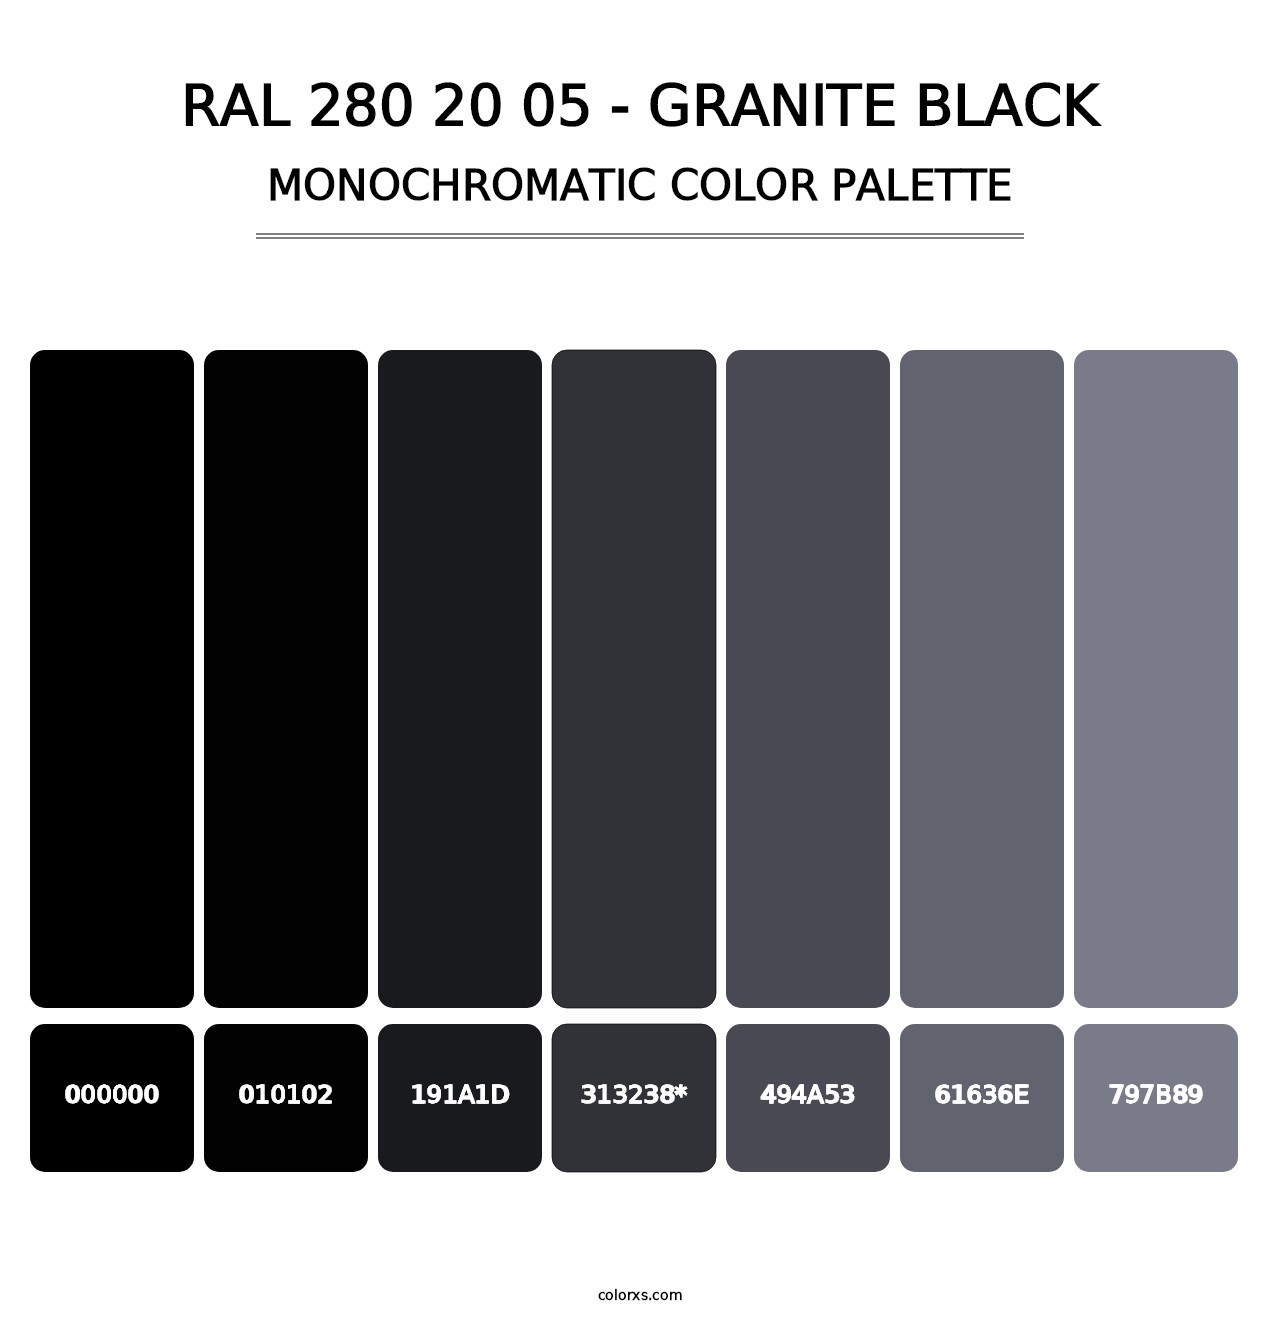 RAL 280 20 05 - Granite Black - Monochromatic Color Palette